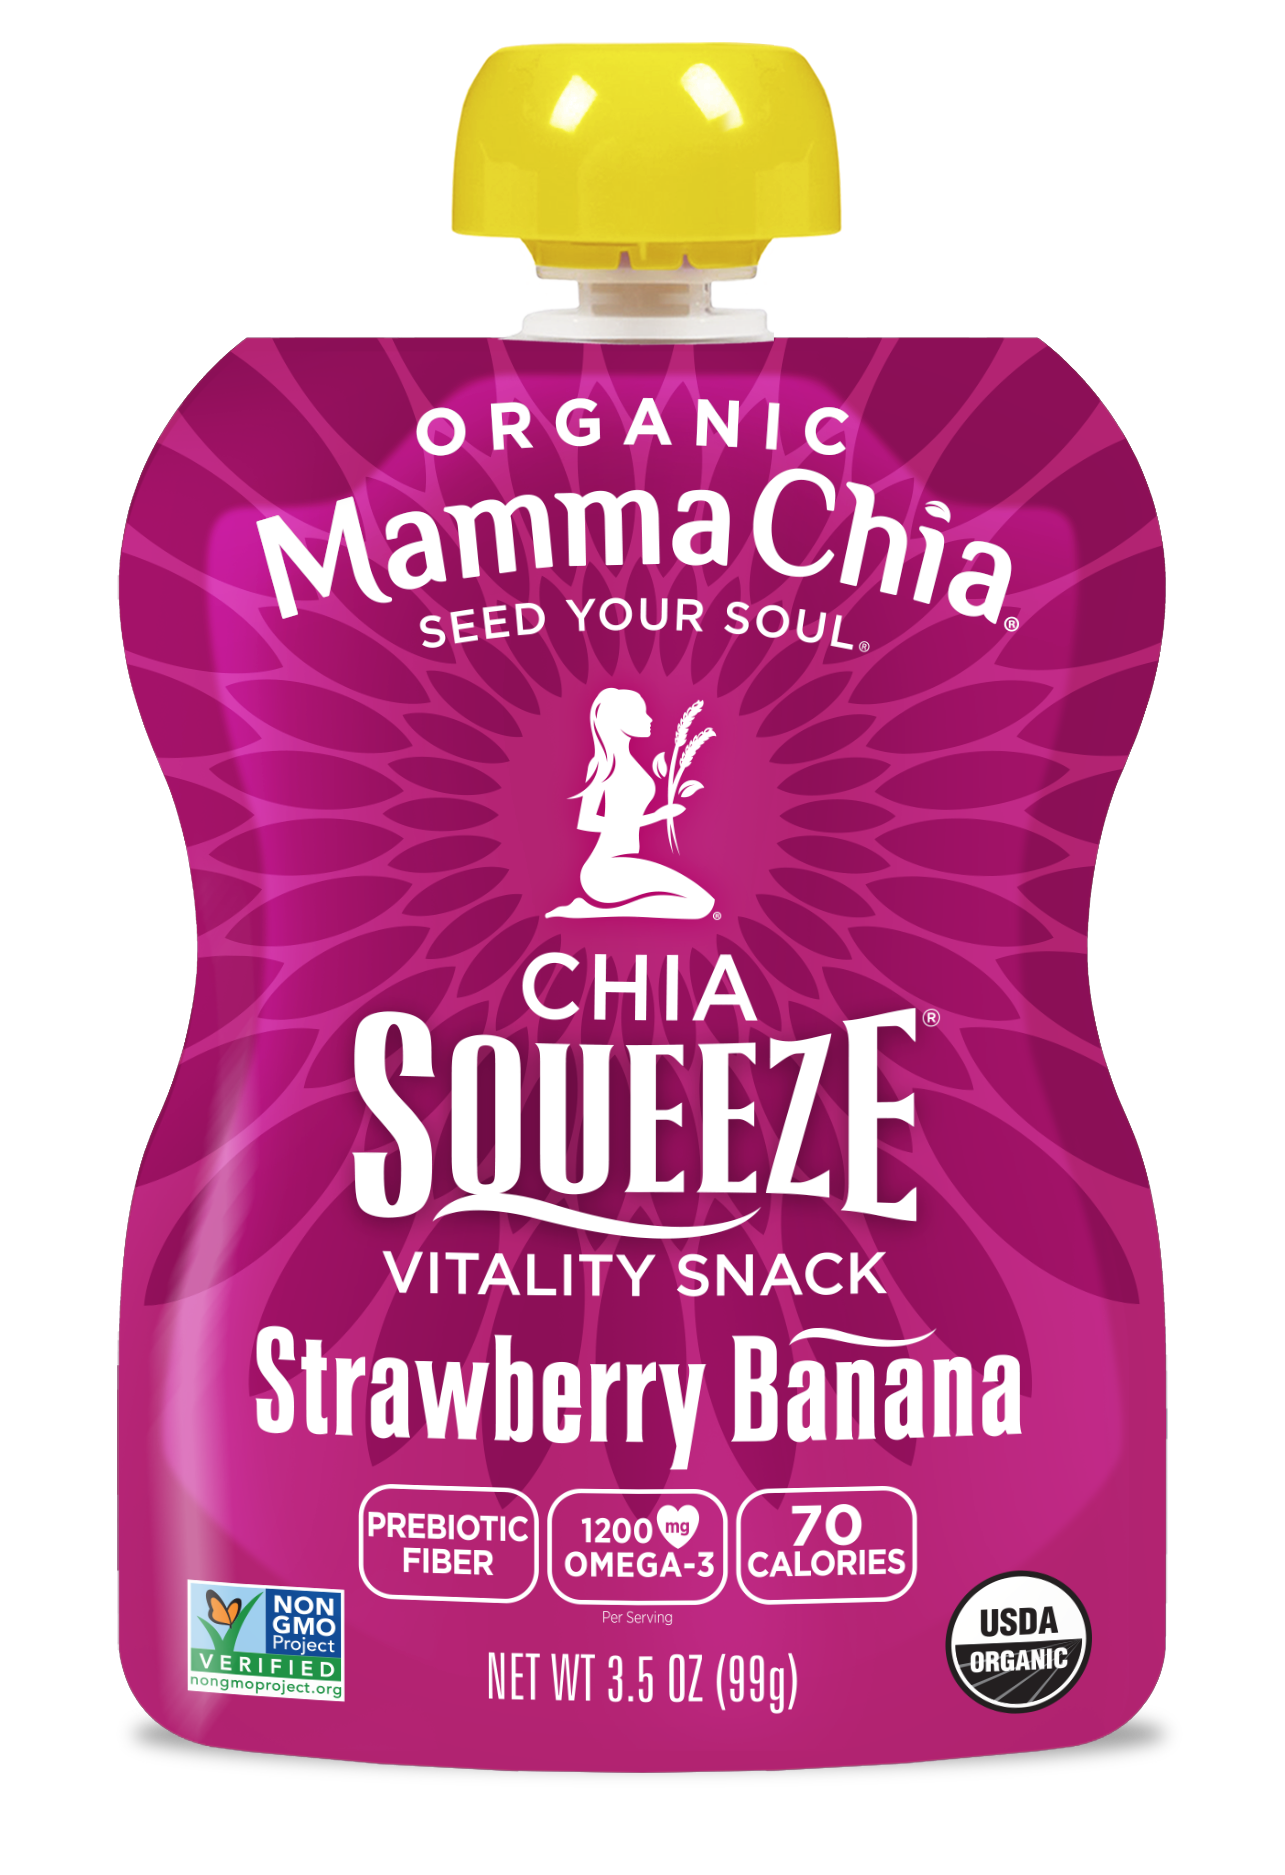 Mamma Chia Strawberry Banana Organic Chia Squeeze 6 units per case 14.0 oz